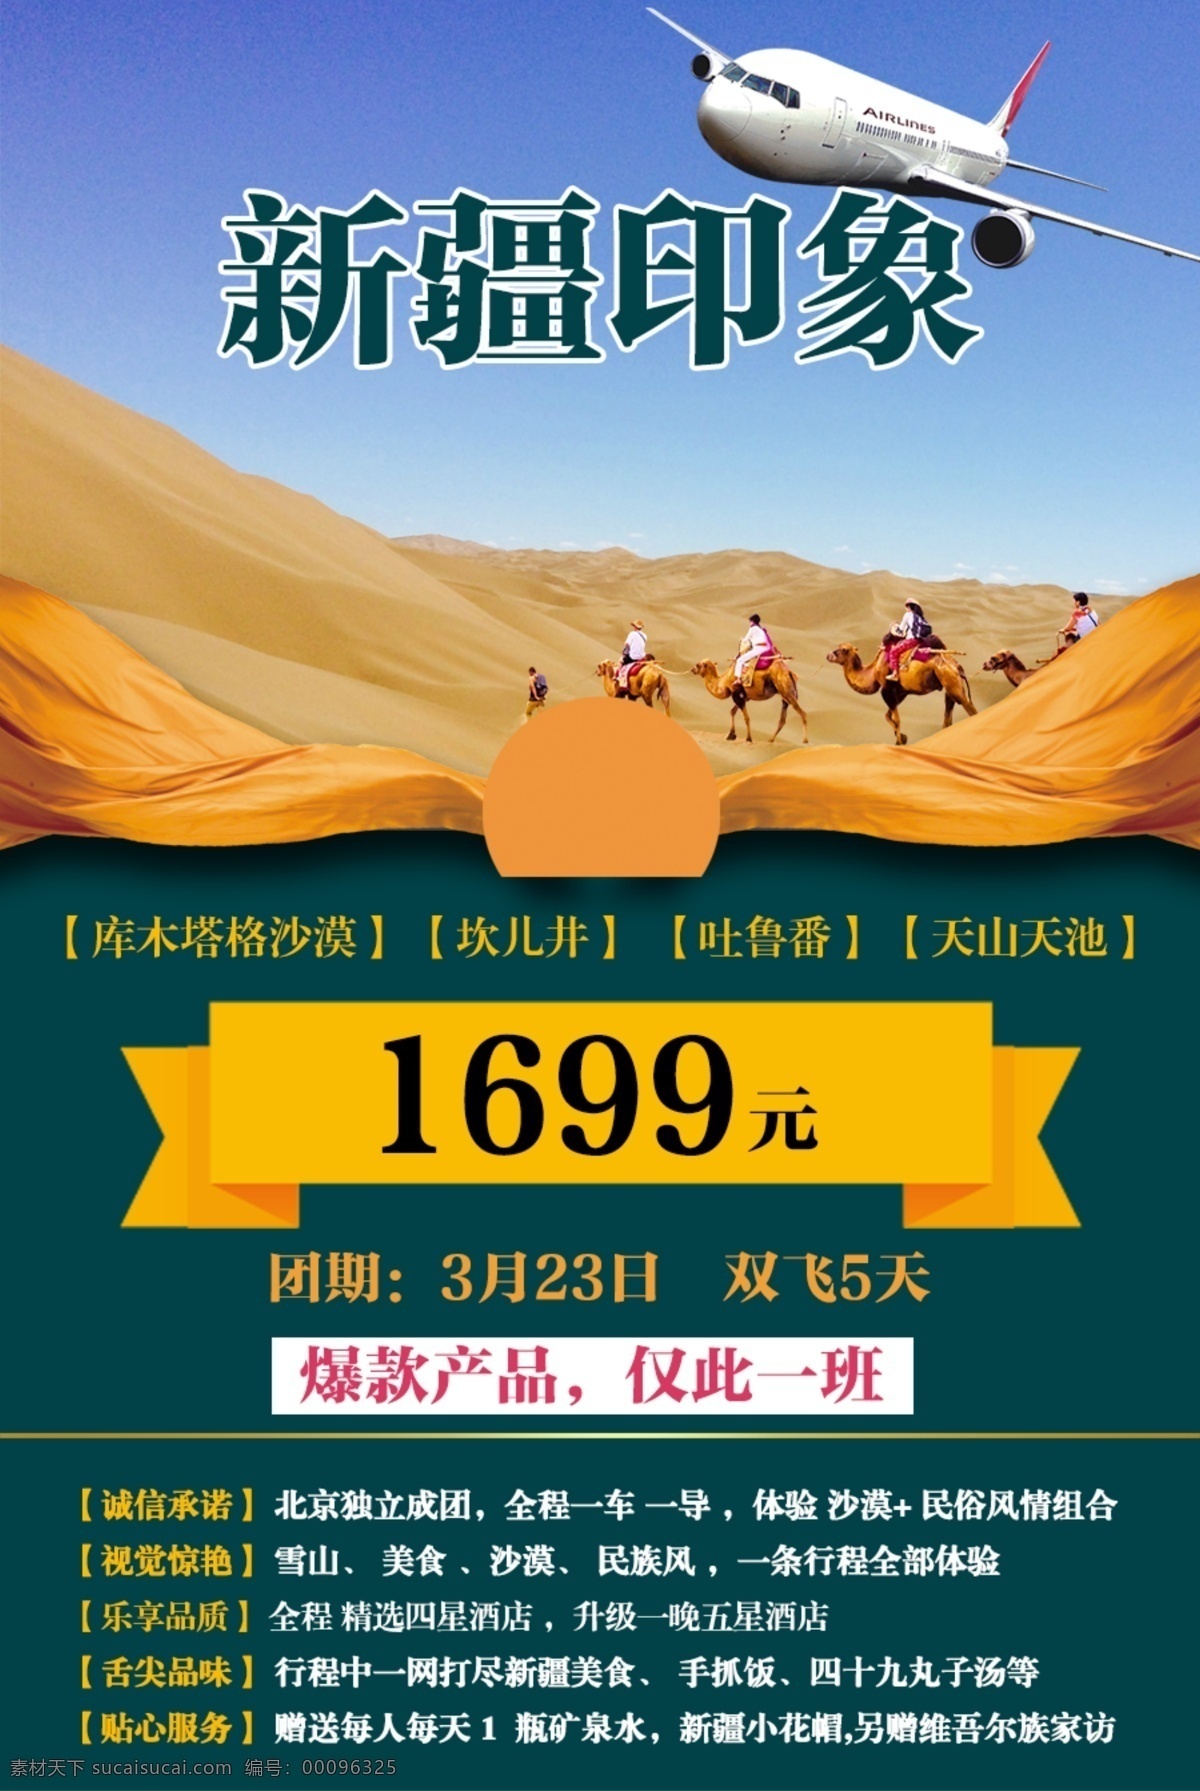 新疆印象 新疆旅游 新疆 旅游 海报 库木塔格沙漠 分层